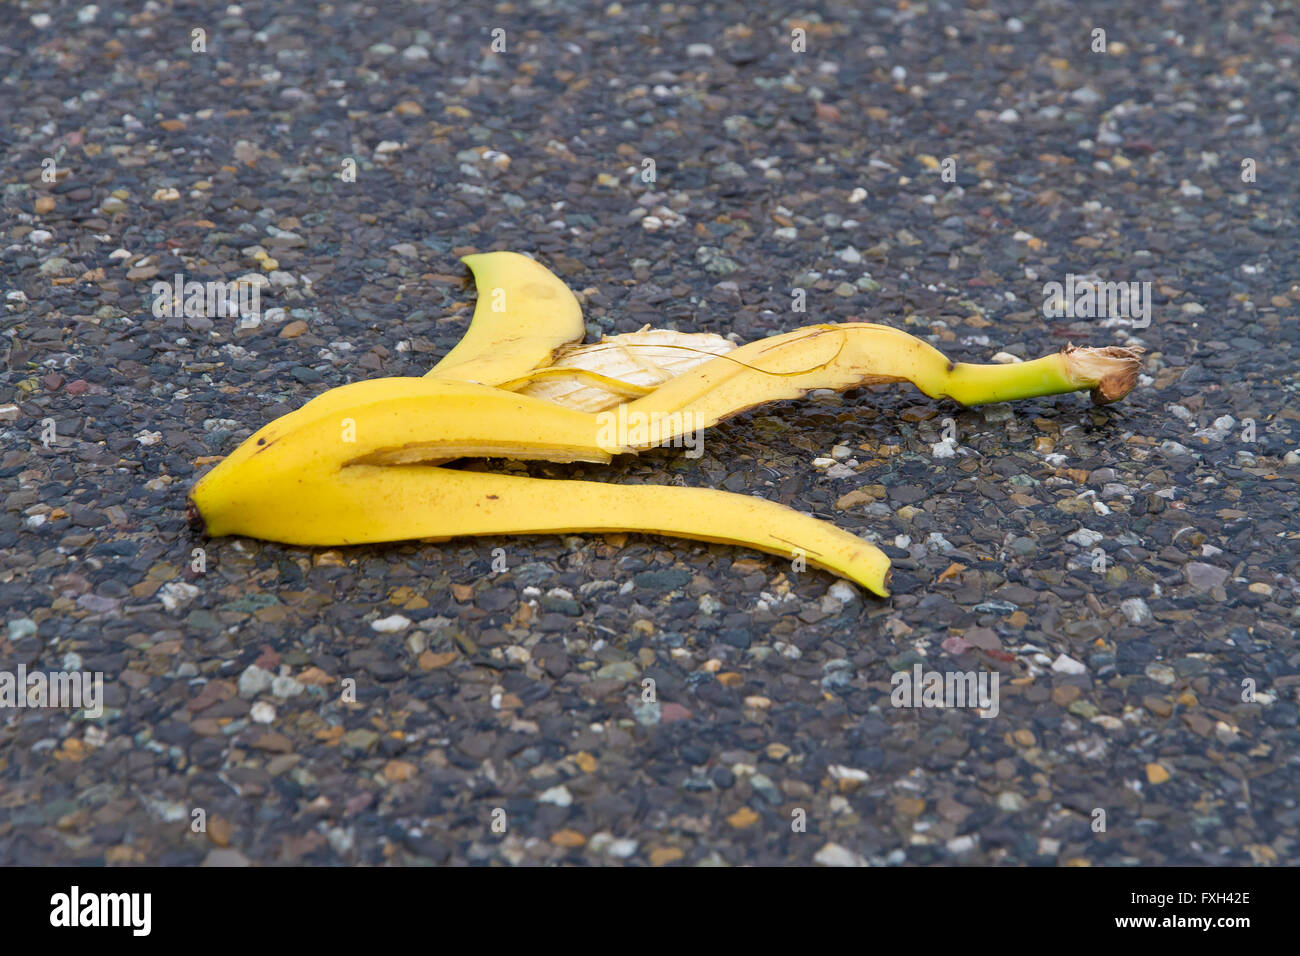 Banana peel on a street Stock Photo